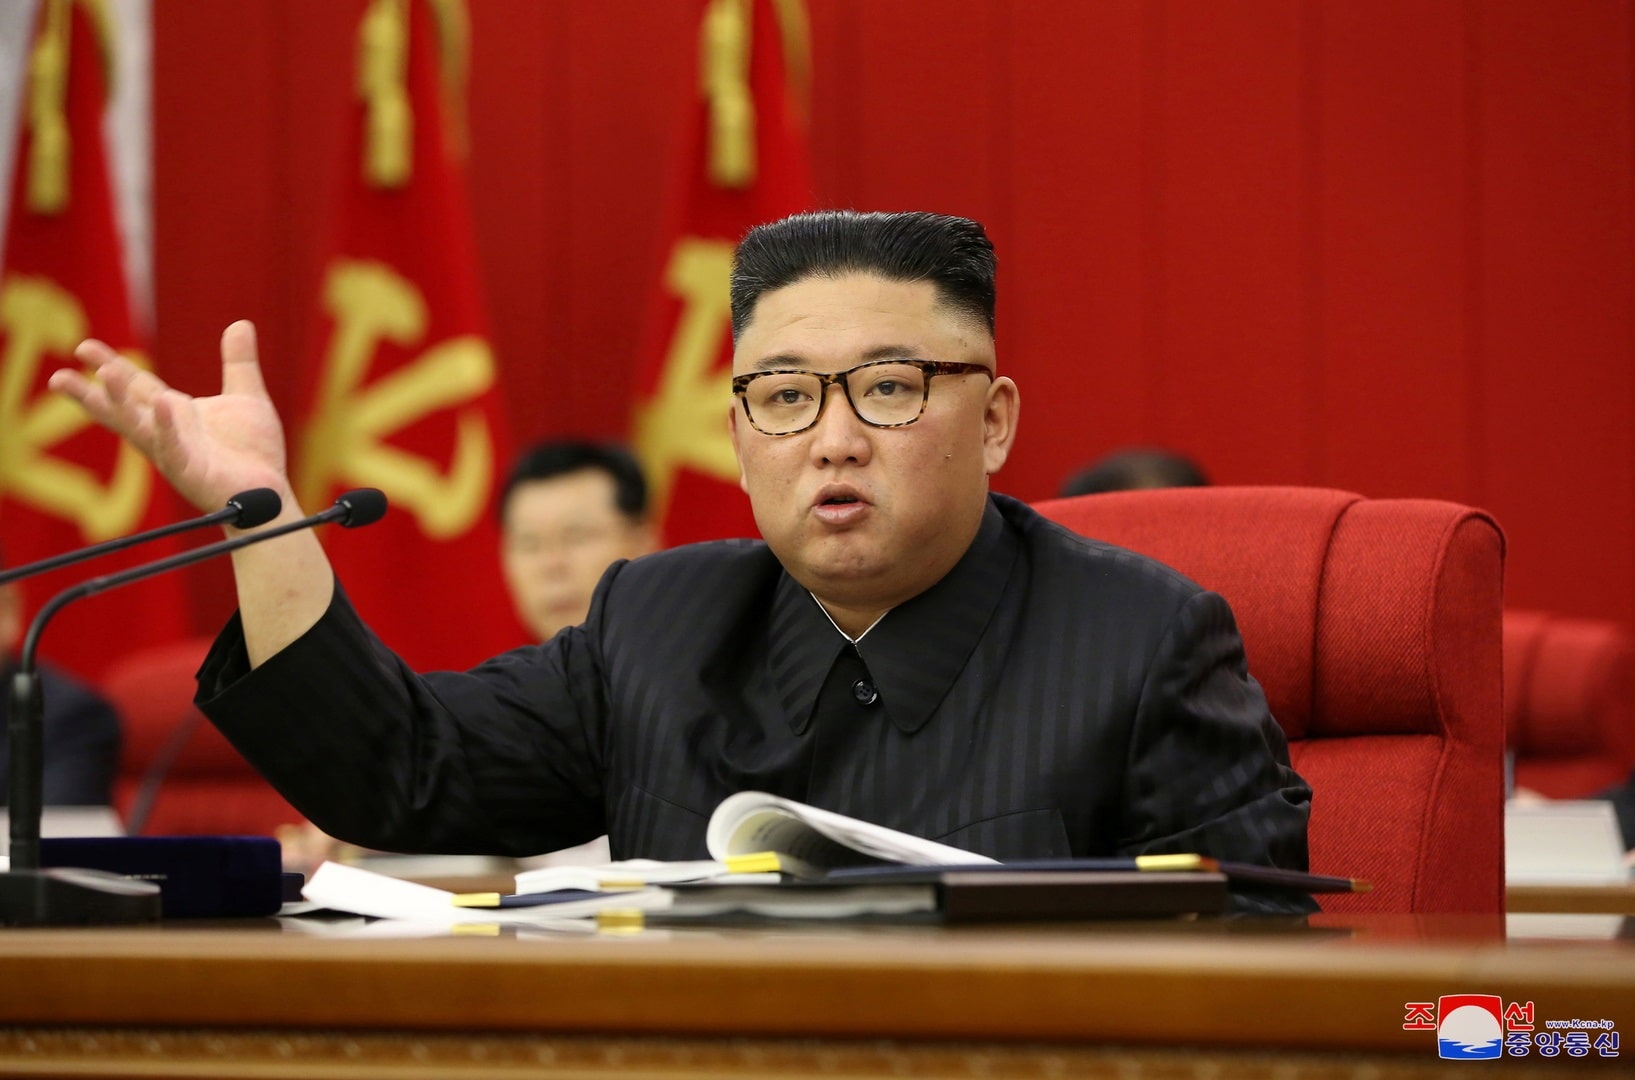 زعيم كوريا الشمالية watanserb.com